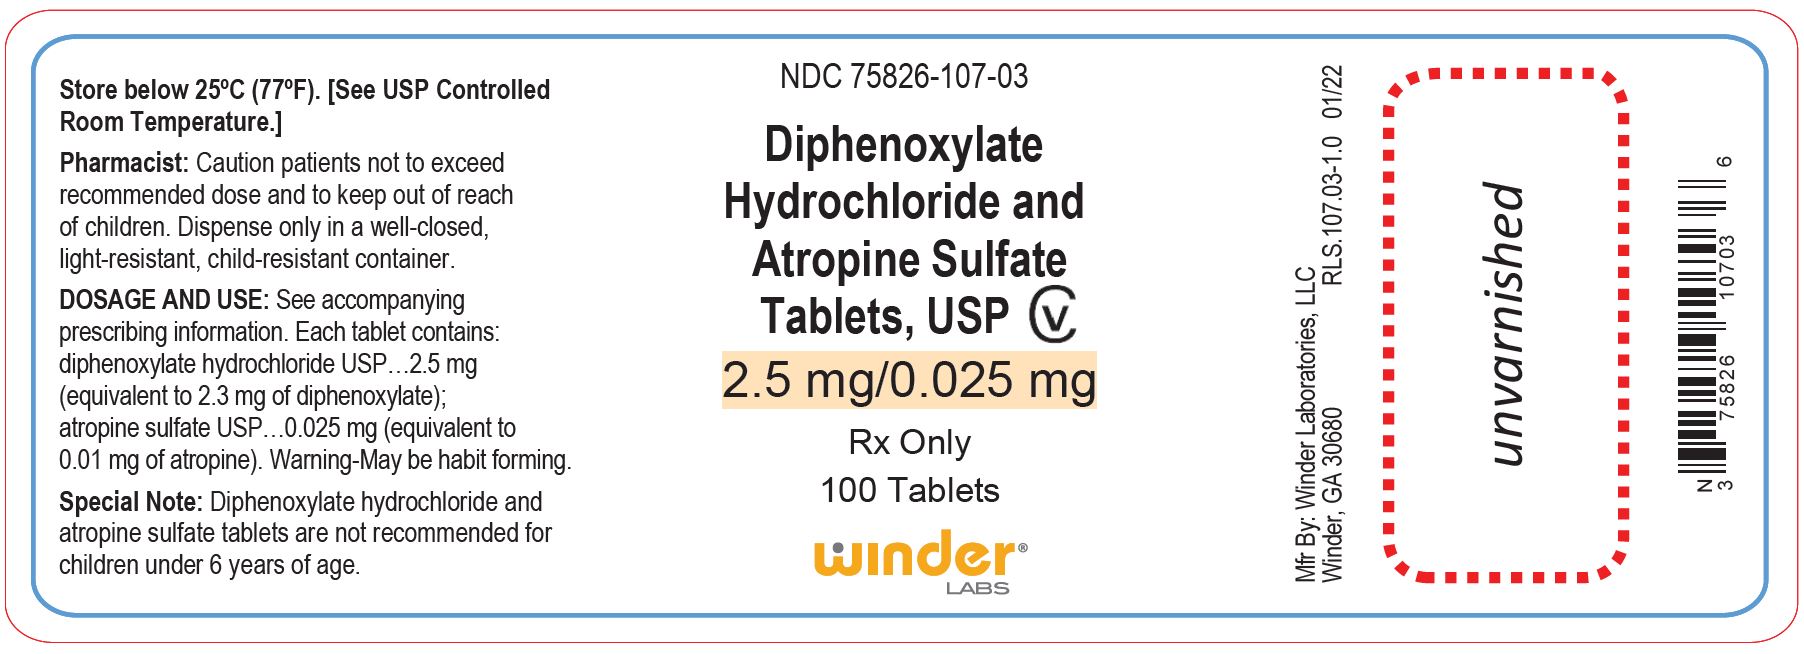 PRINCIPAL DISPLAY PANEL - 100 Tablets Bottle Label